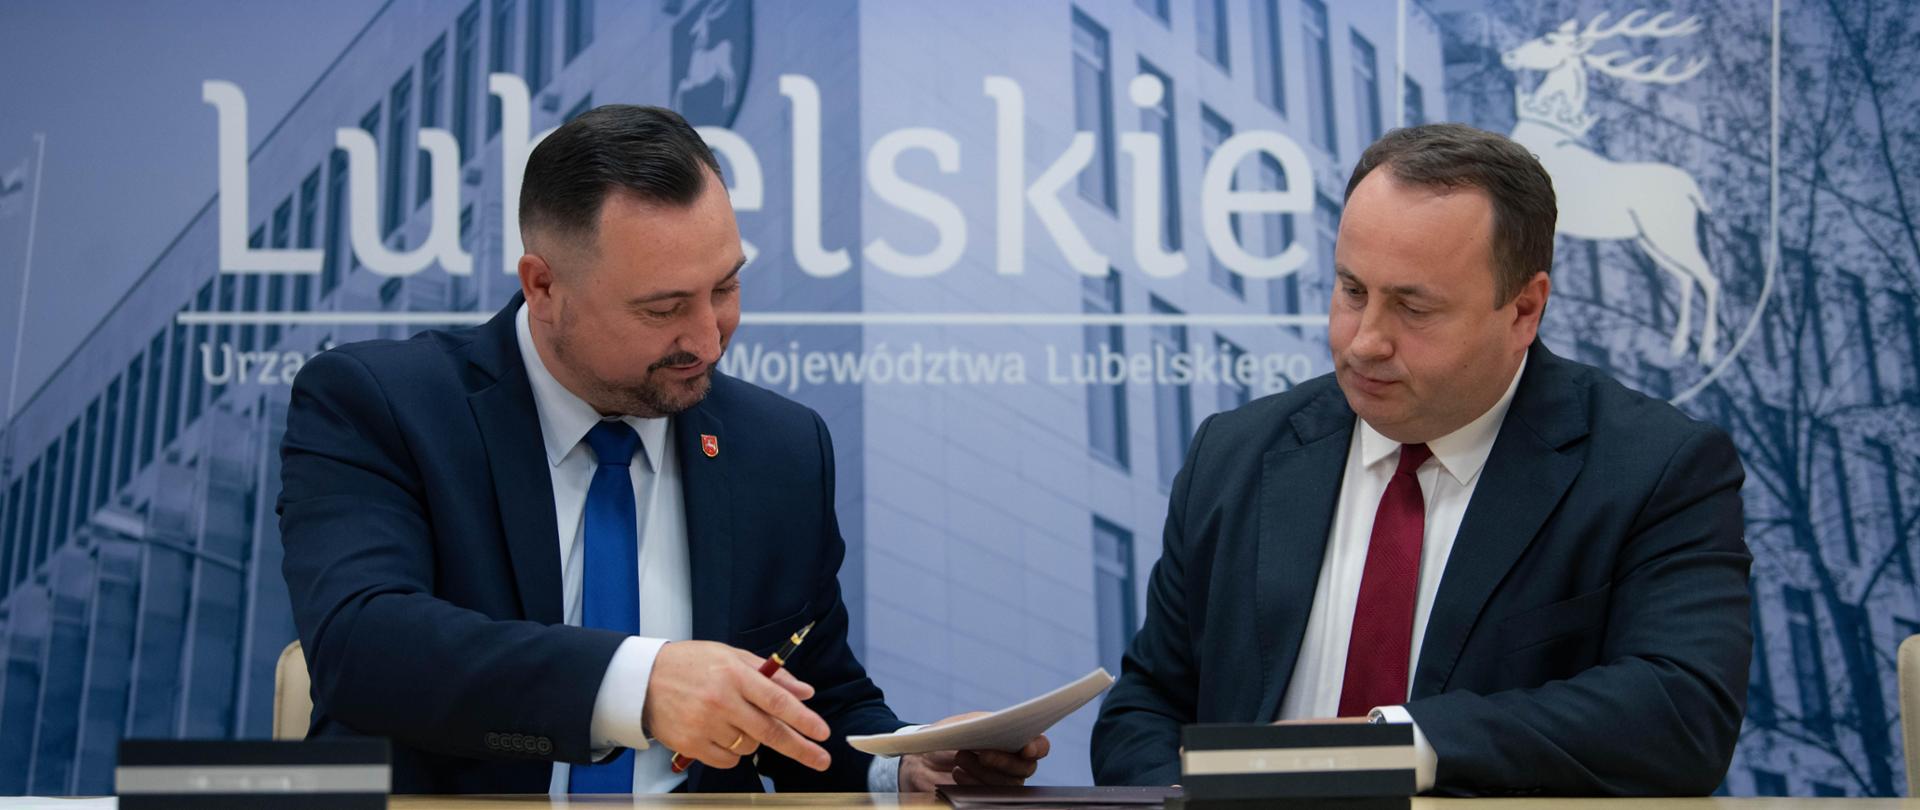 Podpisanie umowy w Urzędzie Marszałkowskim 